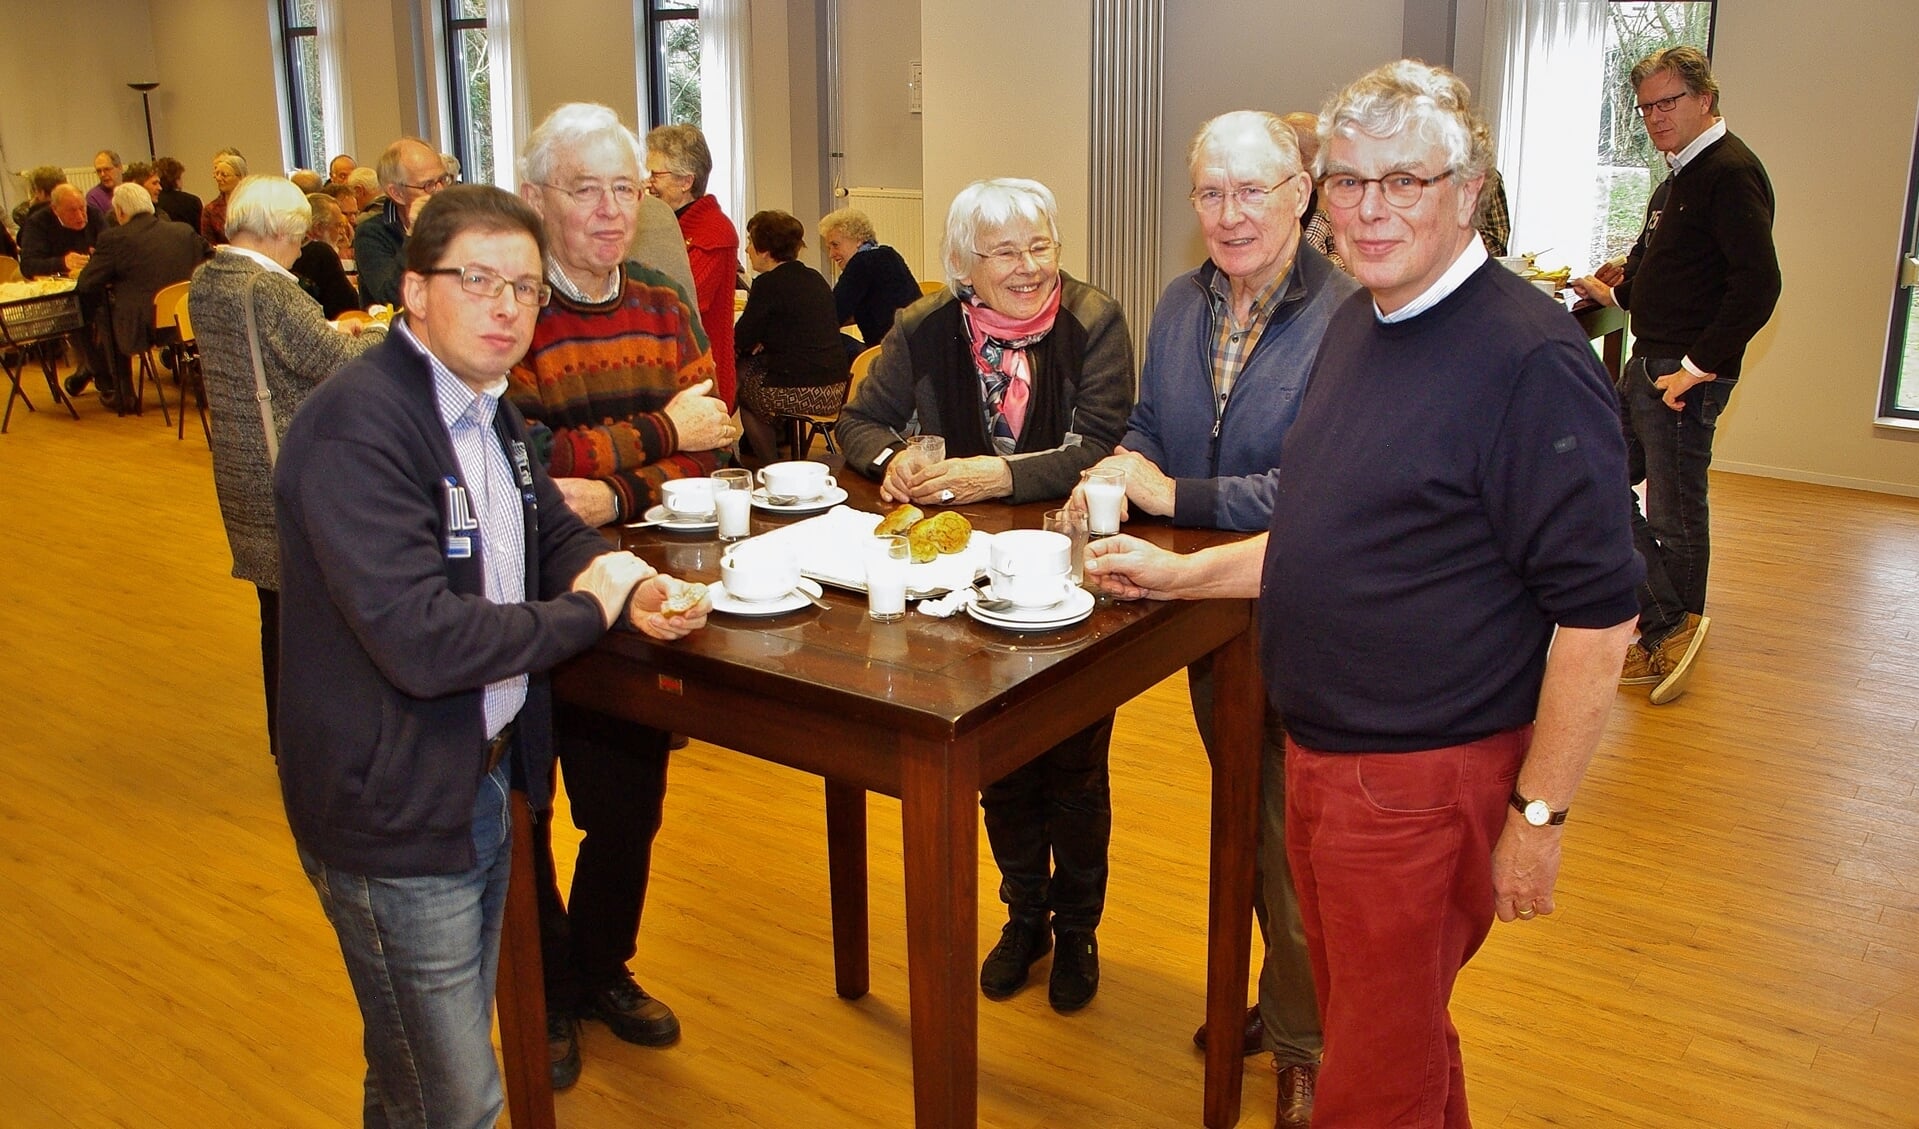 In Willibrords Erf wisselden vrijwilligers bij een heerlijke lunch ervaringen uit. | Foto Willemien Timmers